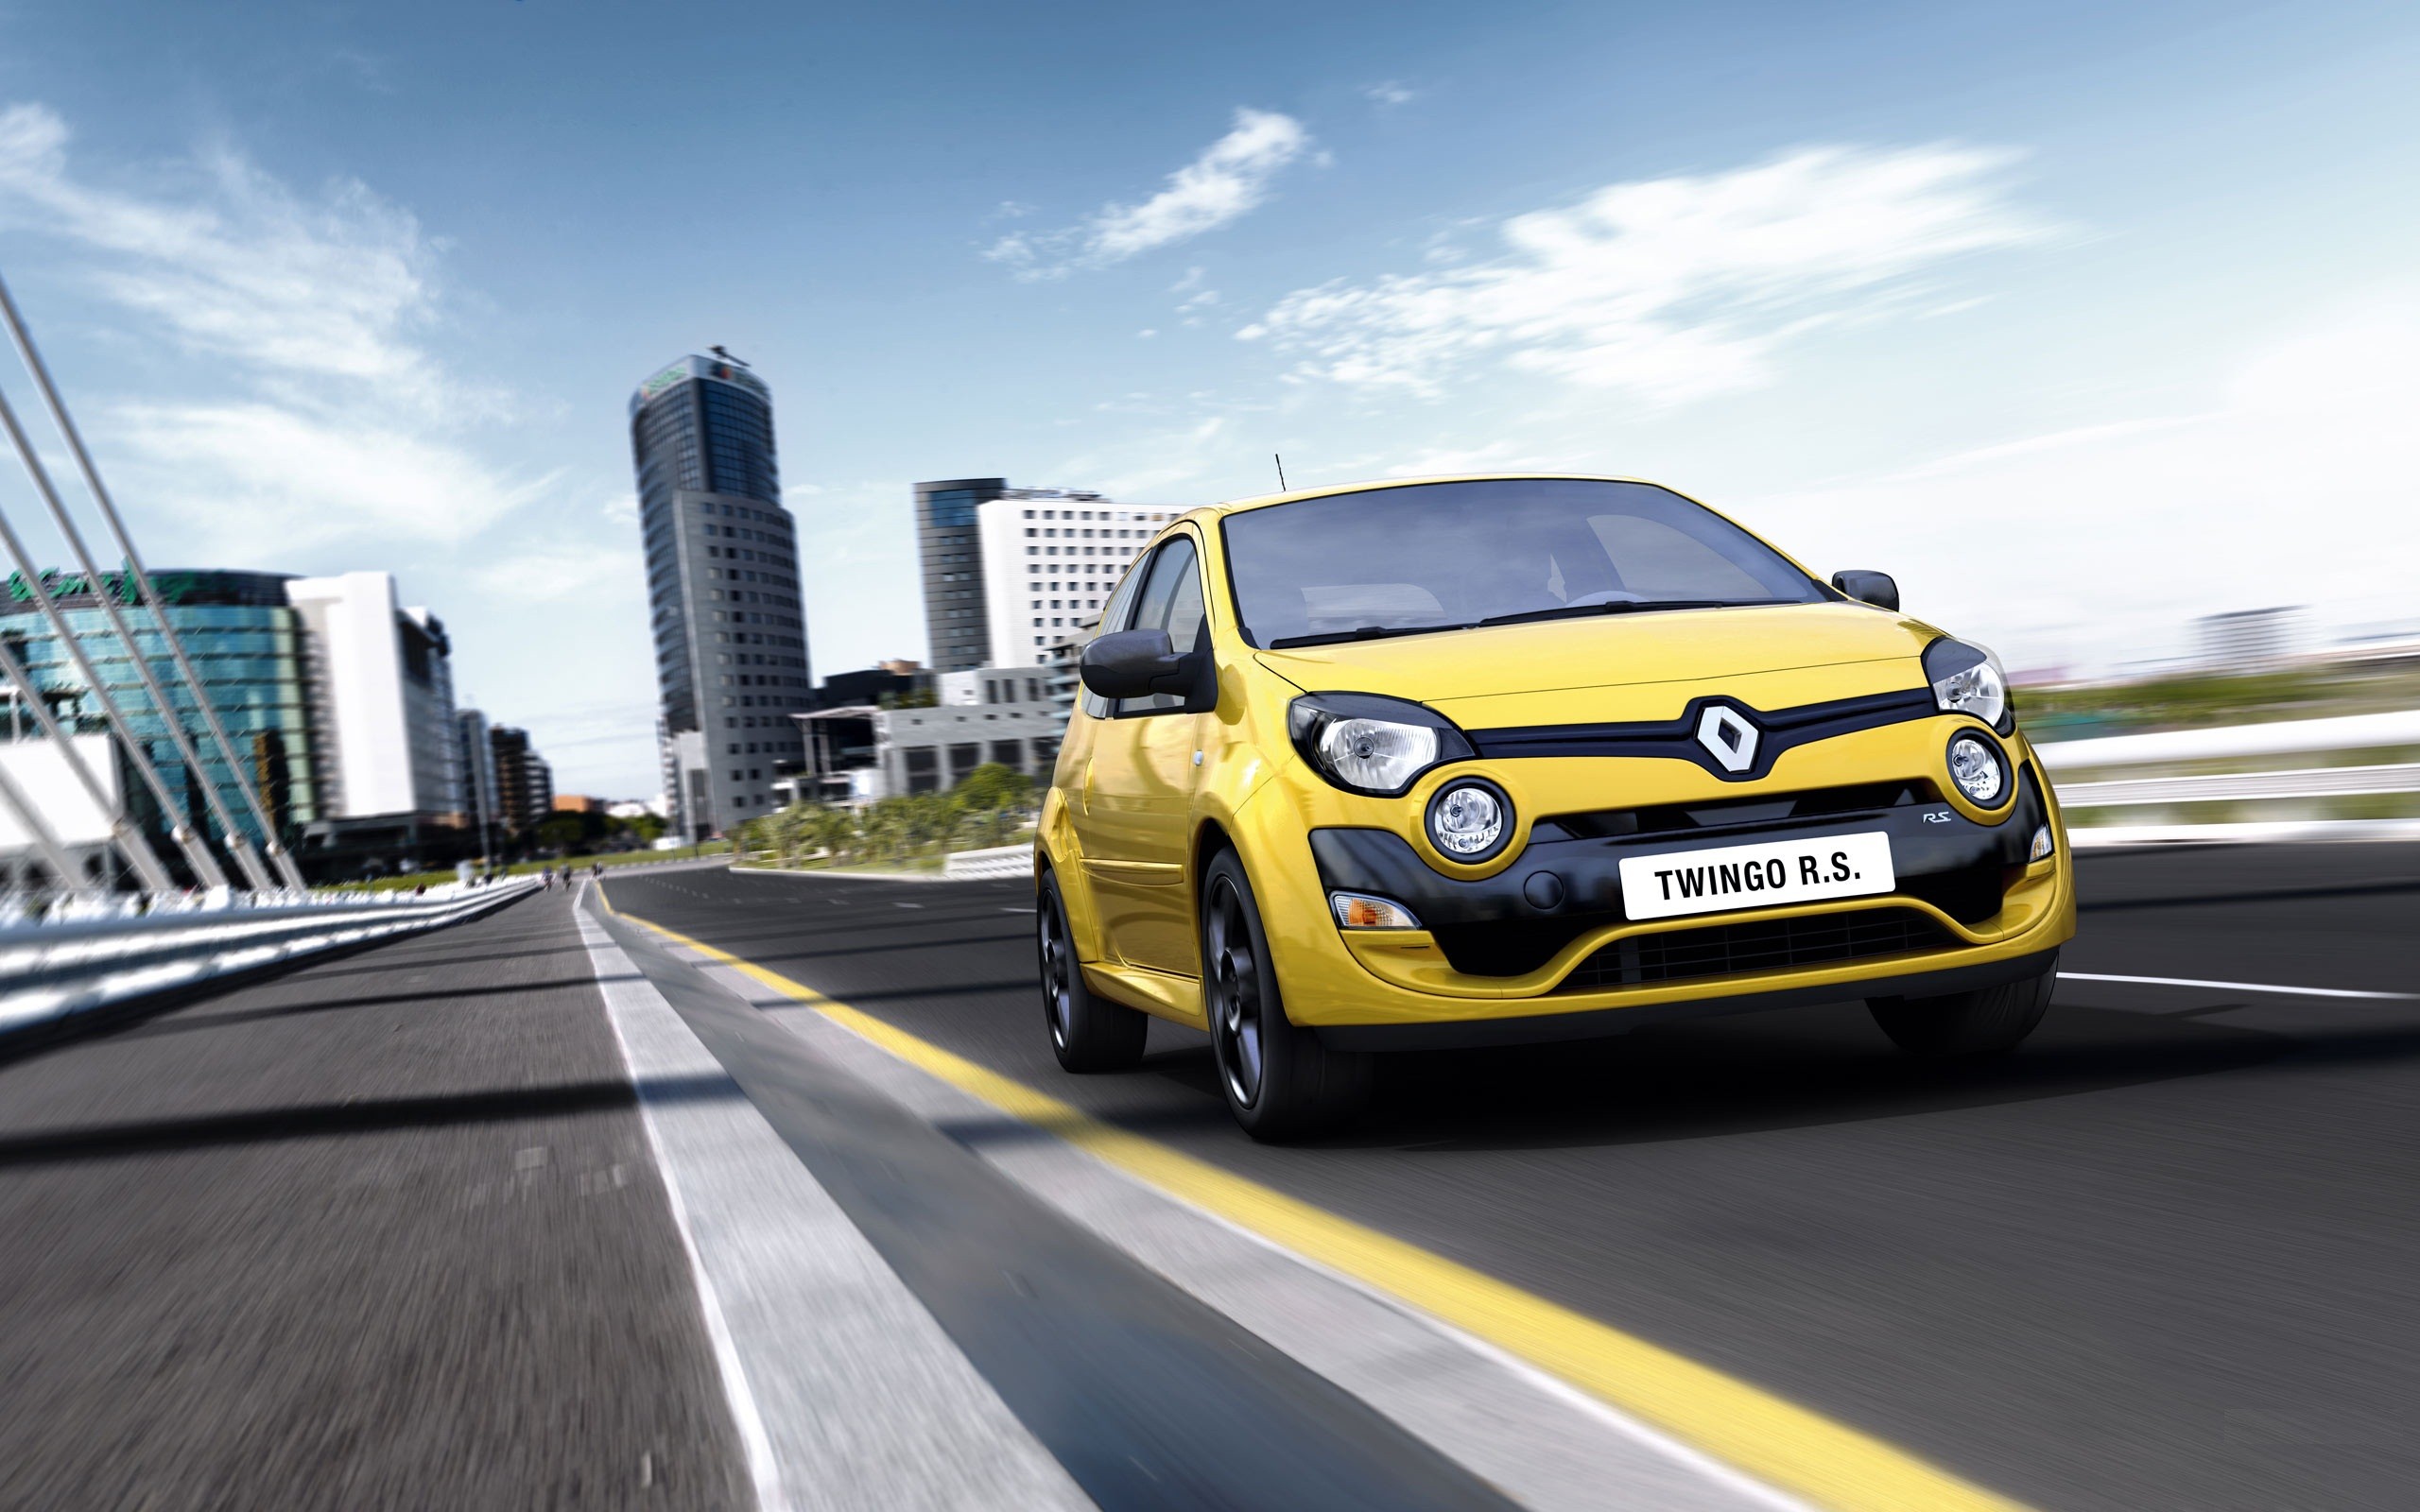 Télécharger des fonds d'écran Renault Twingo HD